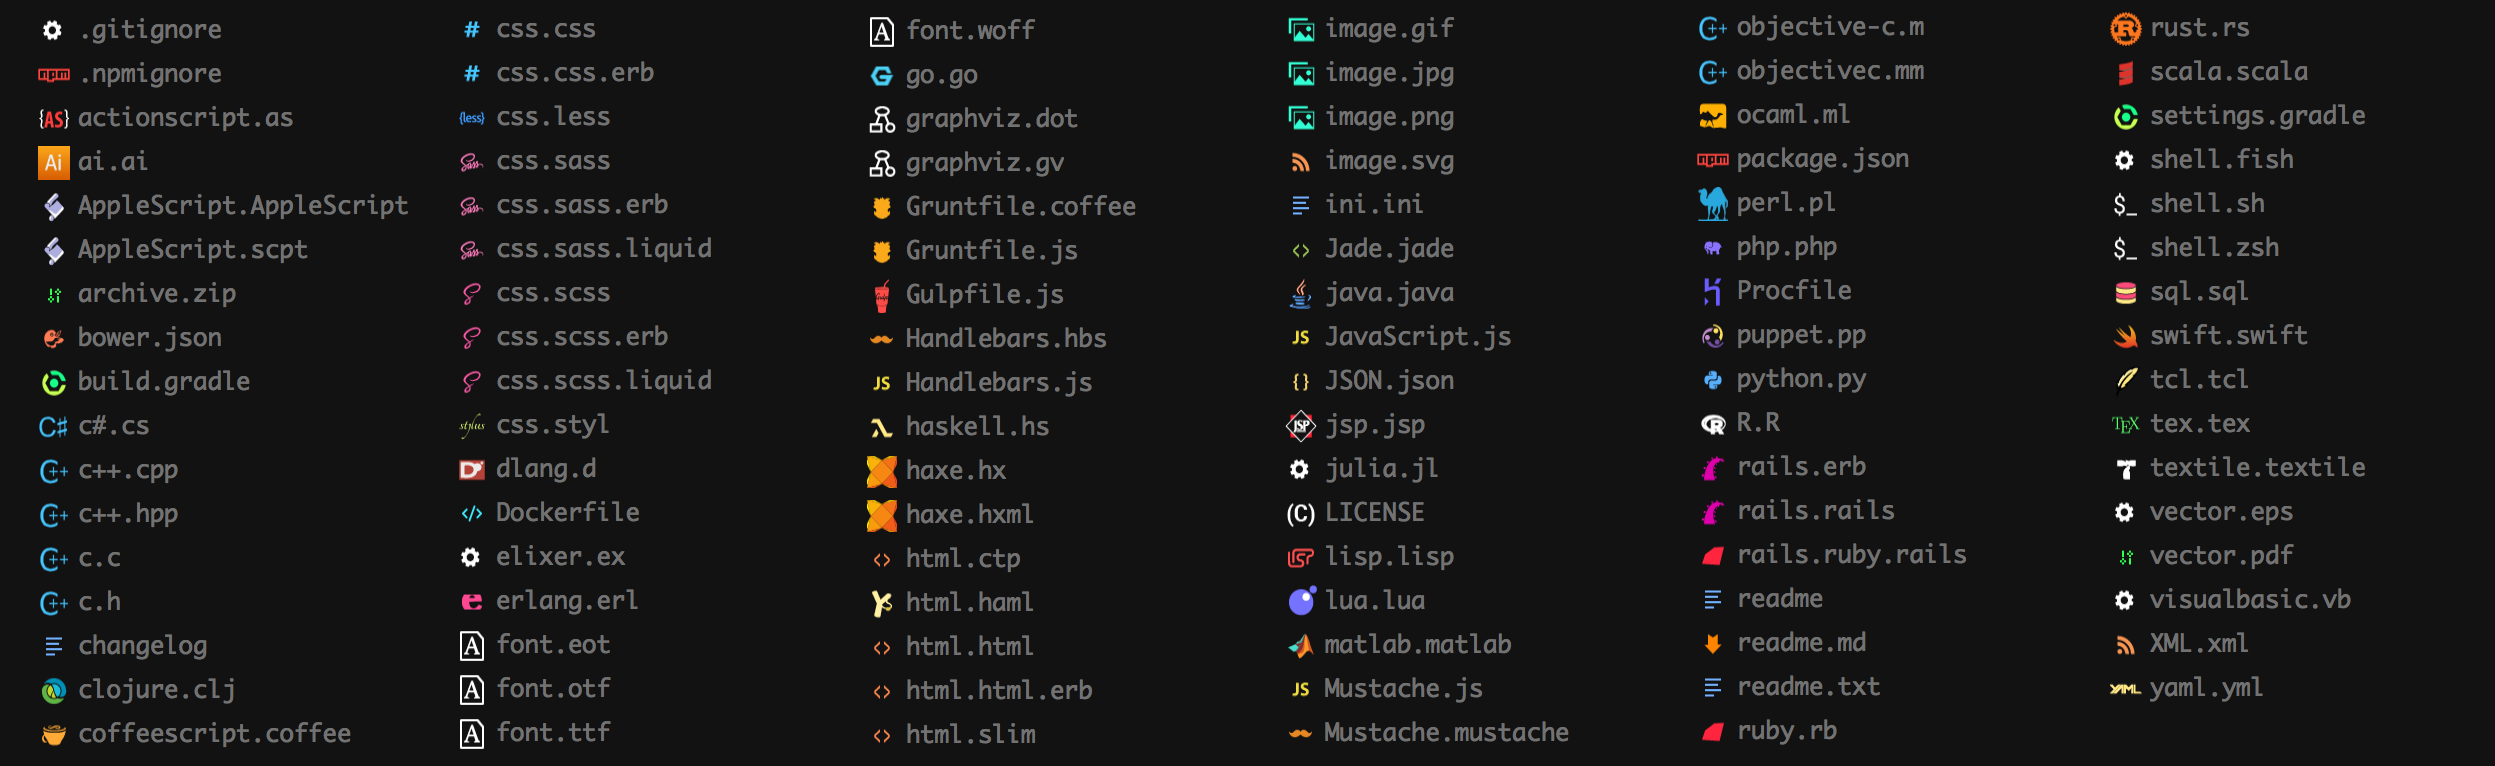 Sidebar file type icons